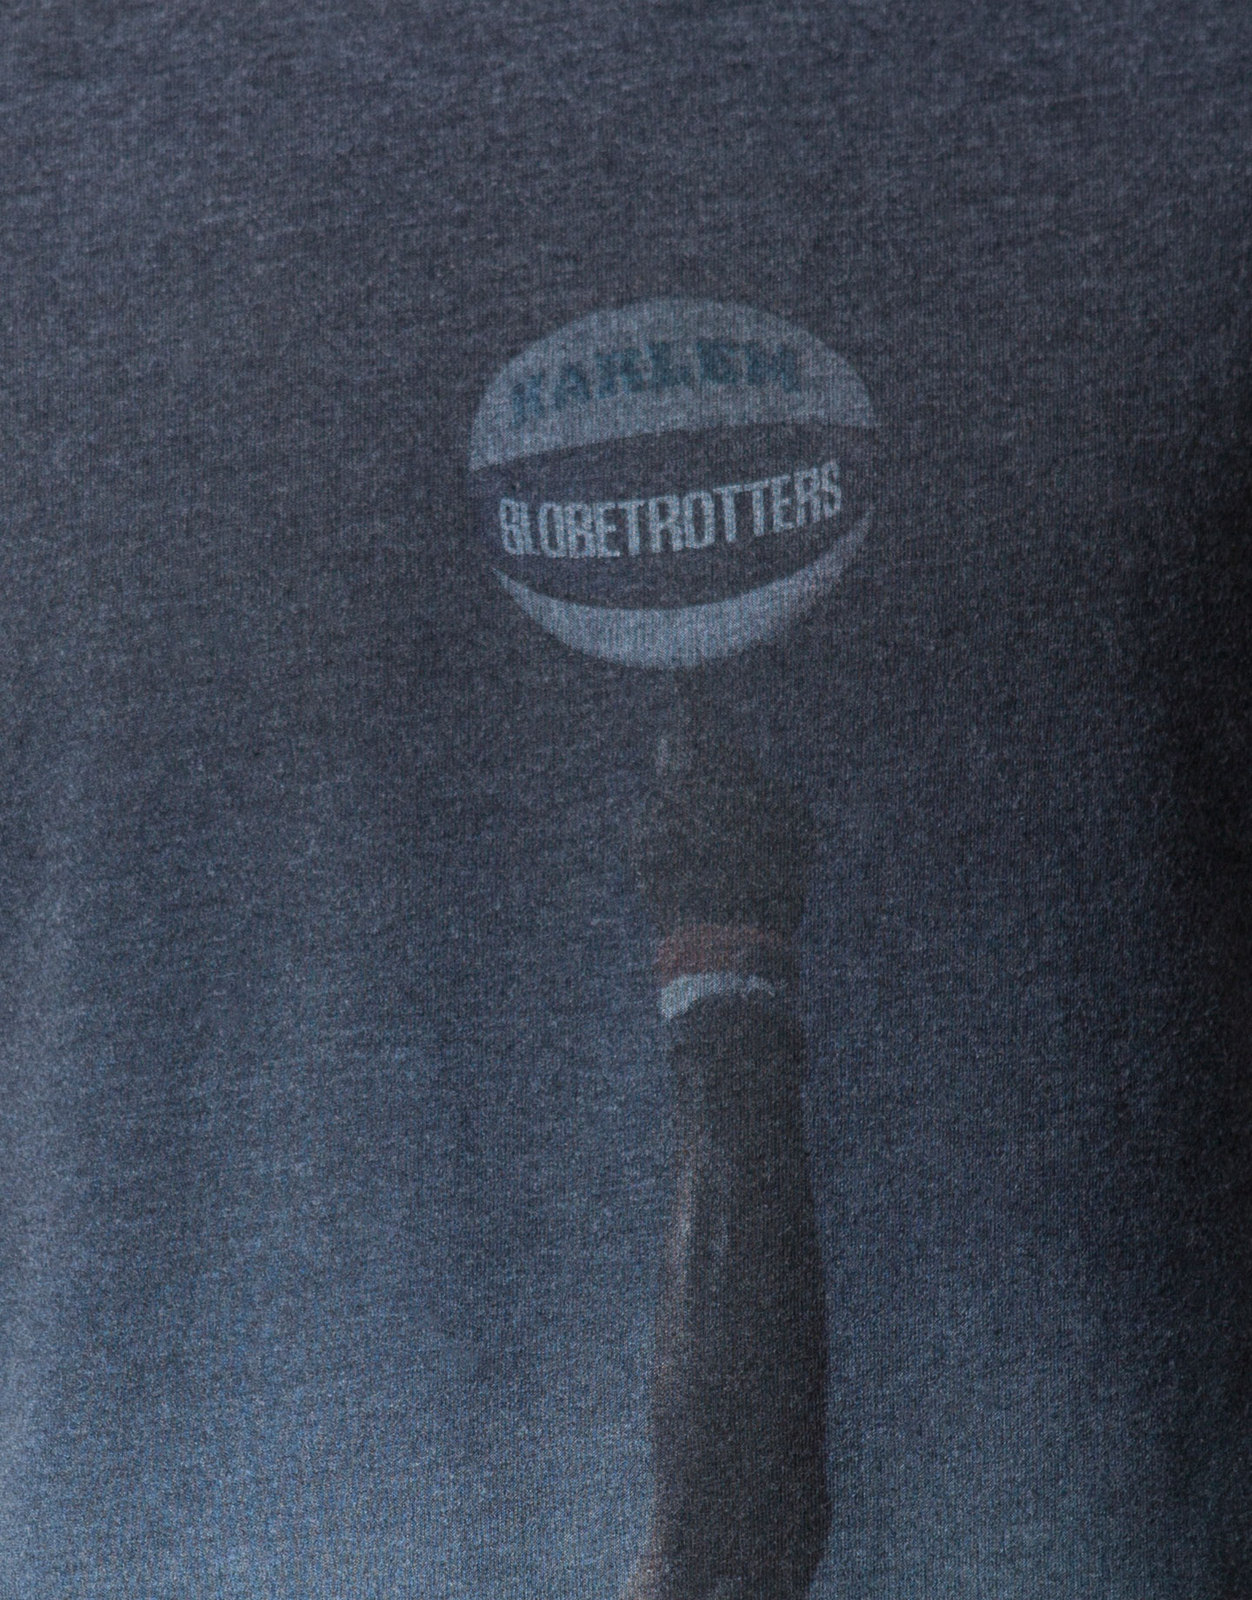 Pull and Bear Globe Trotters t-shirt 2012.2.13 fotója